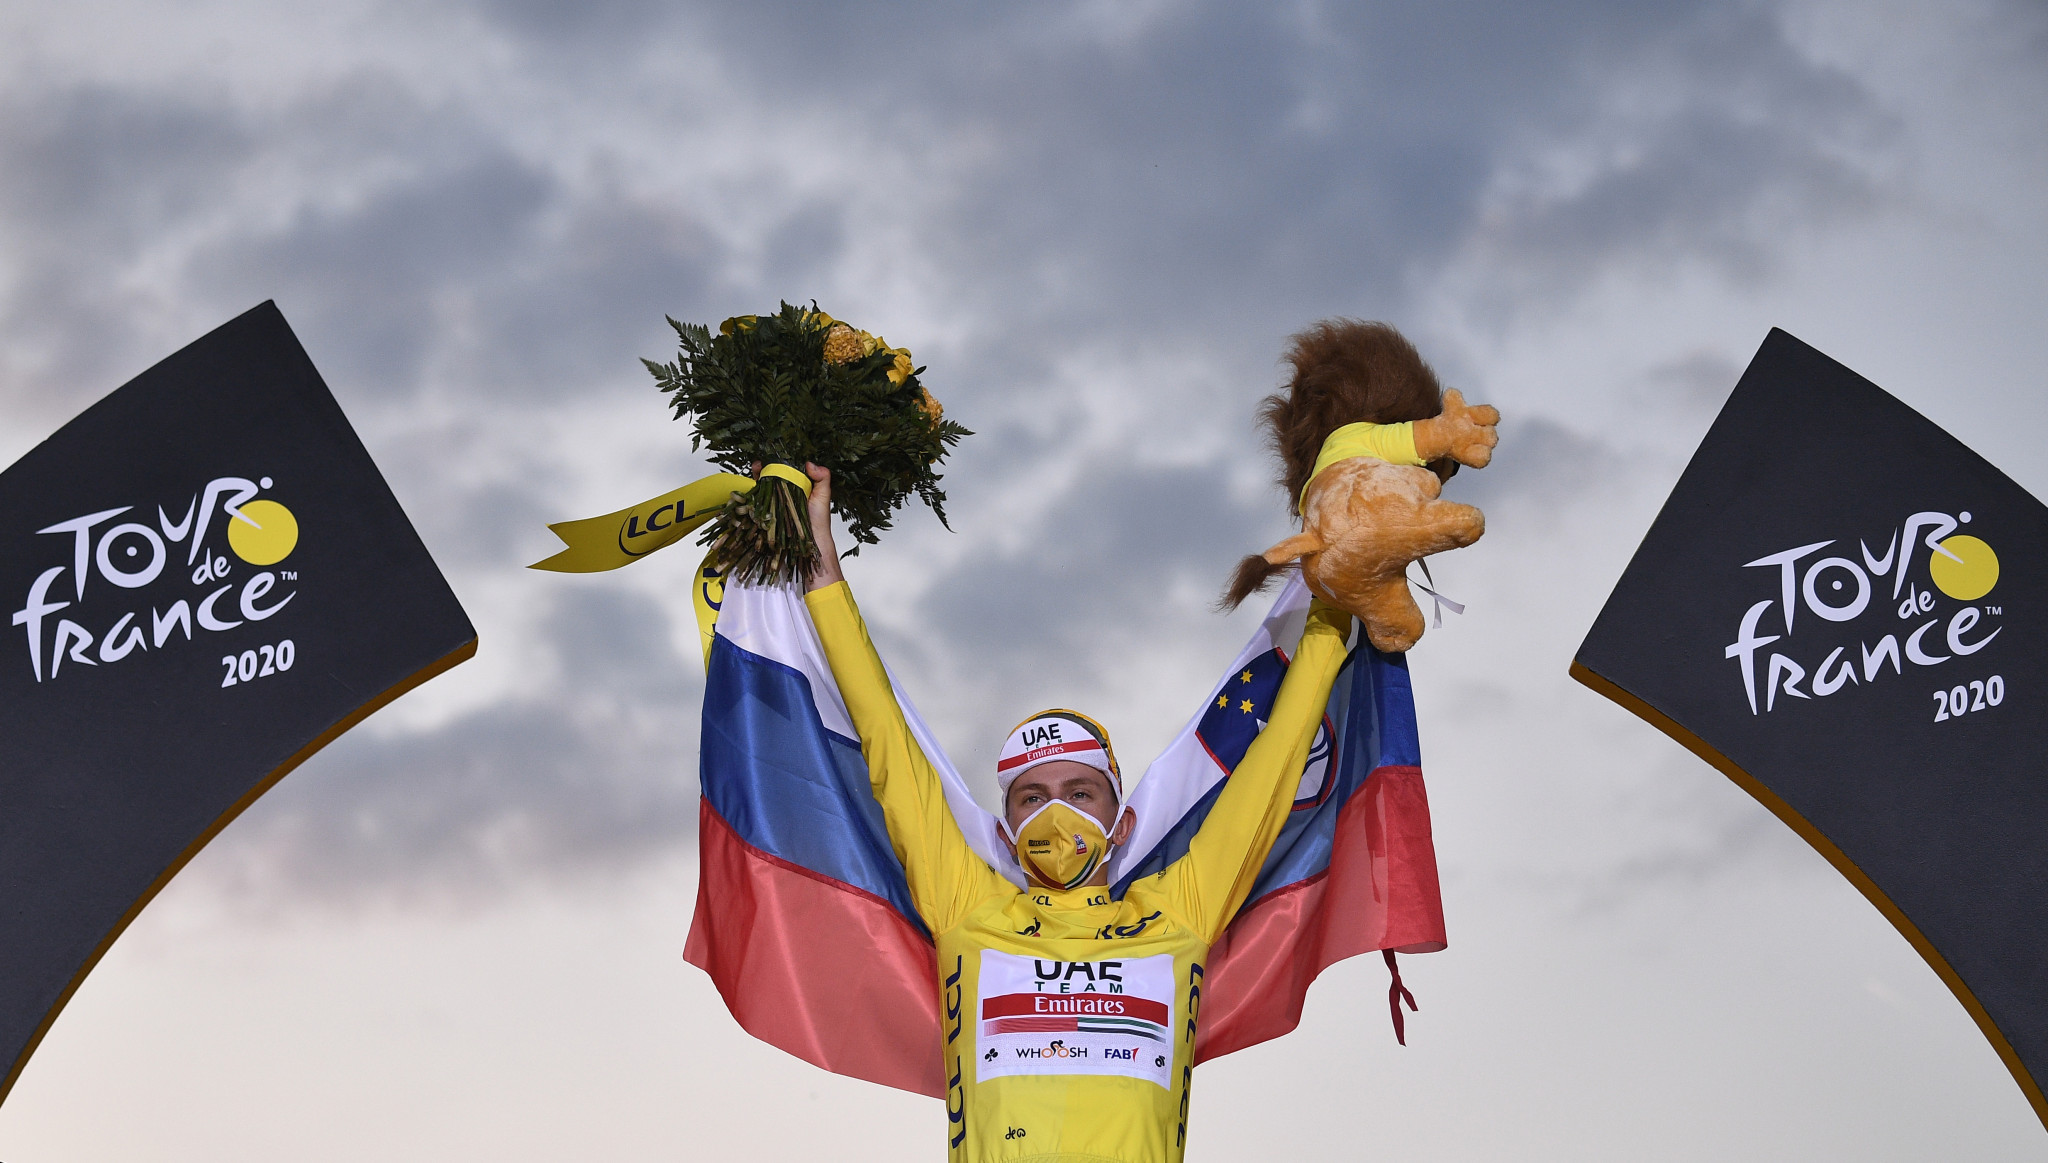 Pogačar becomes first Slovenian winner of Tour de France